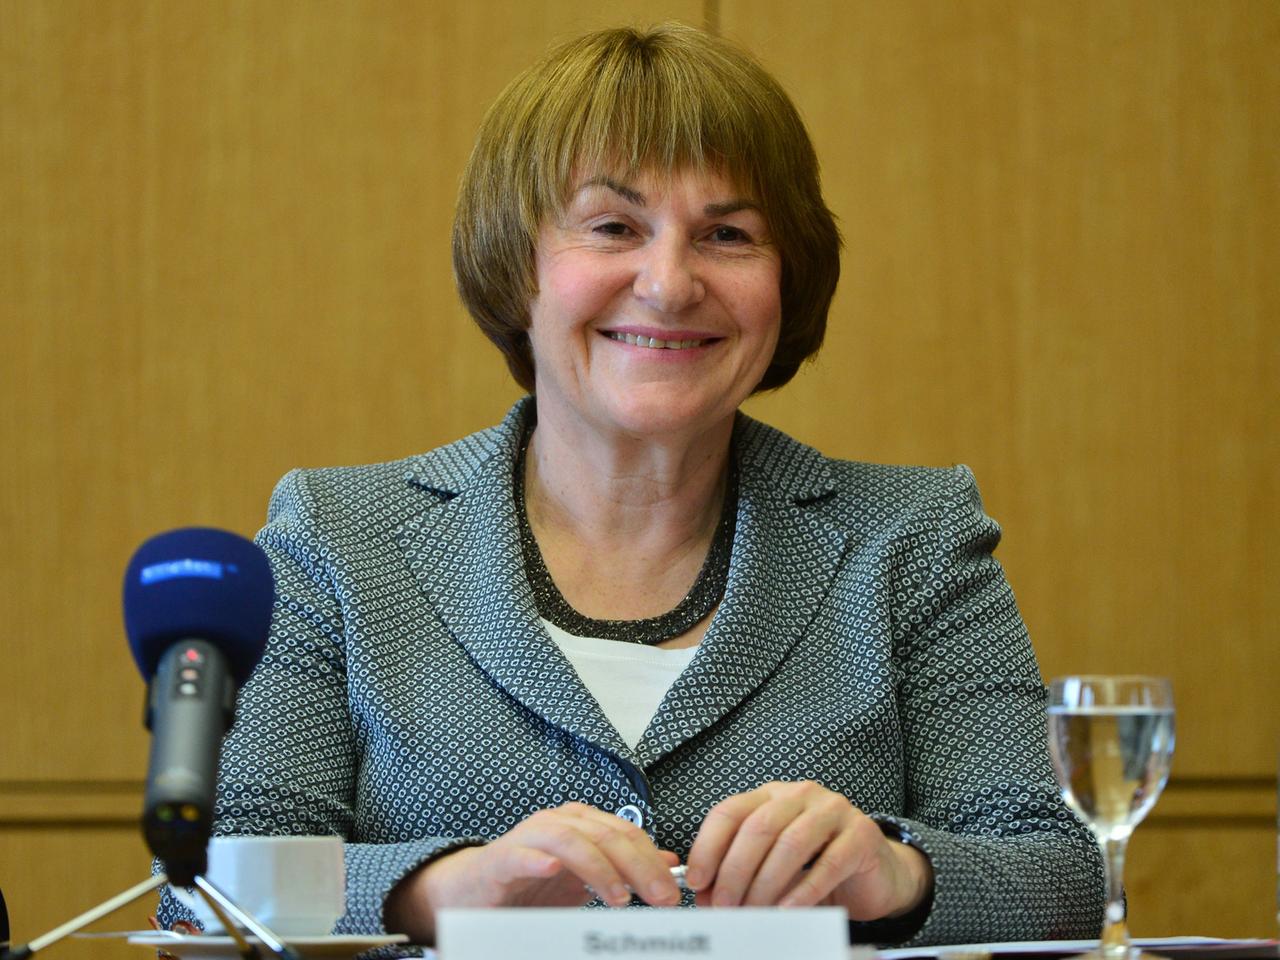 Die Präsidentin des Bundesarbeitsgerichts, Ingrid Schmidt, stellt am 26.02.2014 in Erfurt (Thüringen) den Jahresbericht 2013 vor.